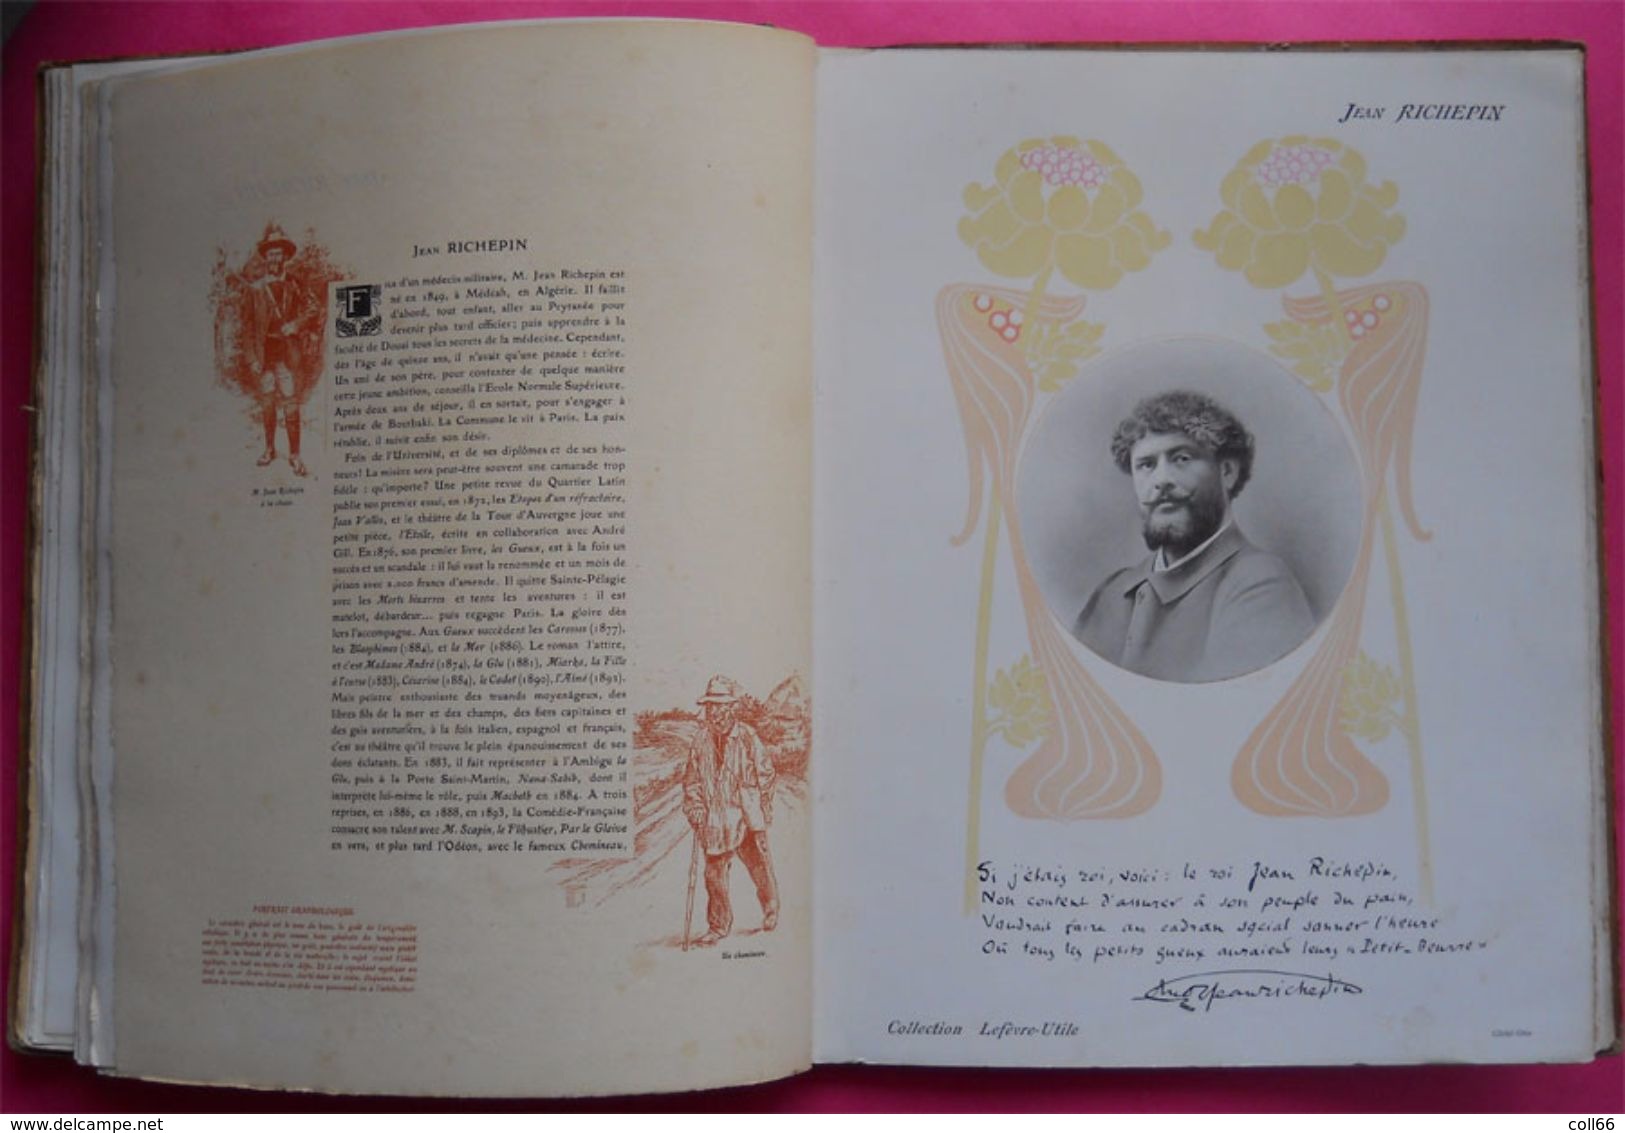 1904 RARE LU Album Lefèvre-Utile Les Contemporains Célèbres Médaillon Mucha par Octave Beauchamp imp de Malherbe